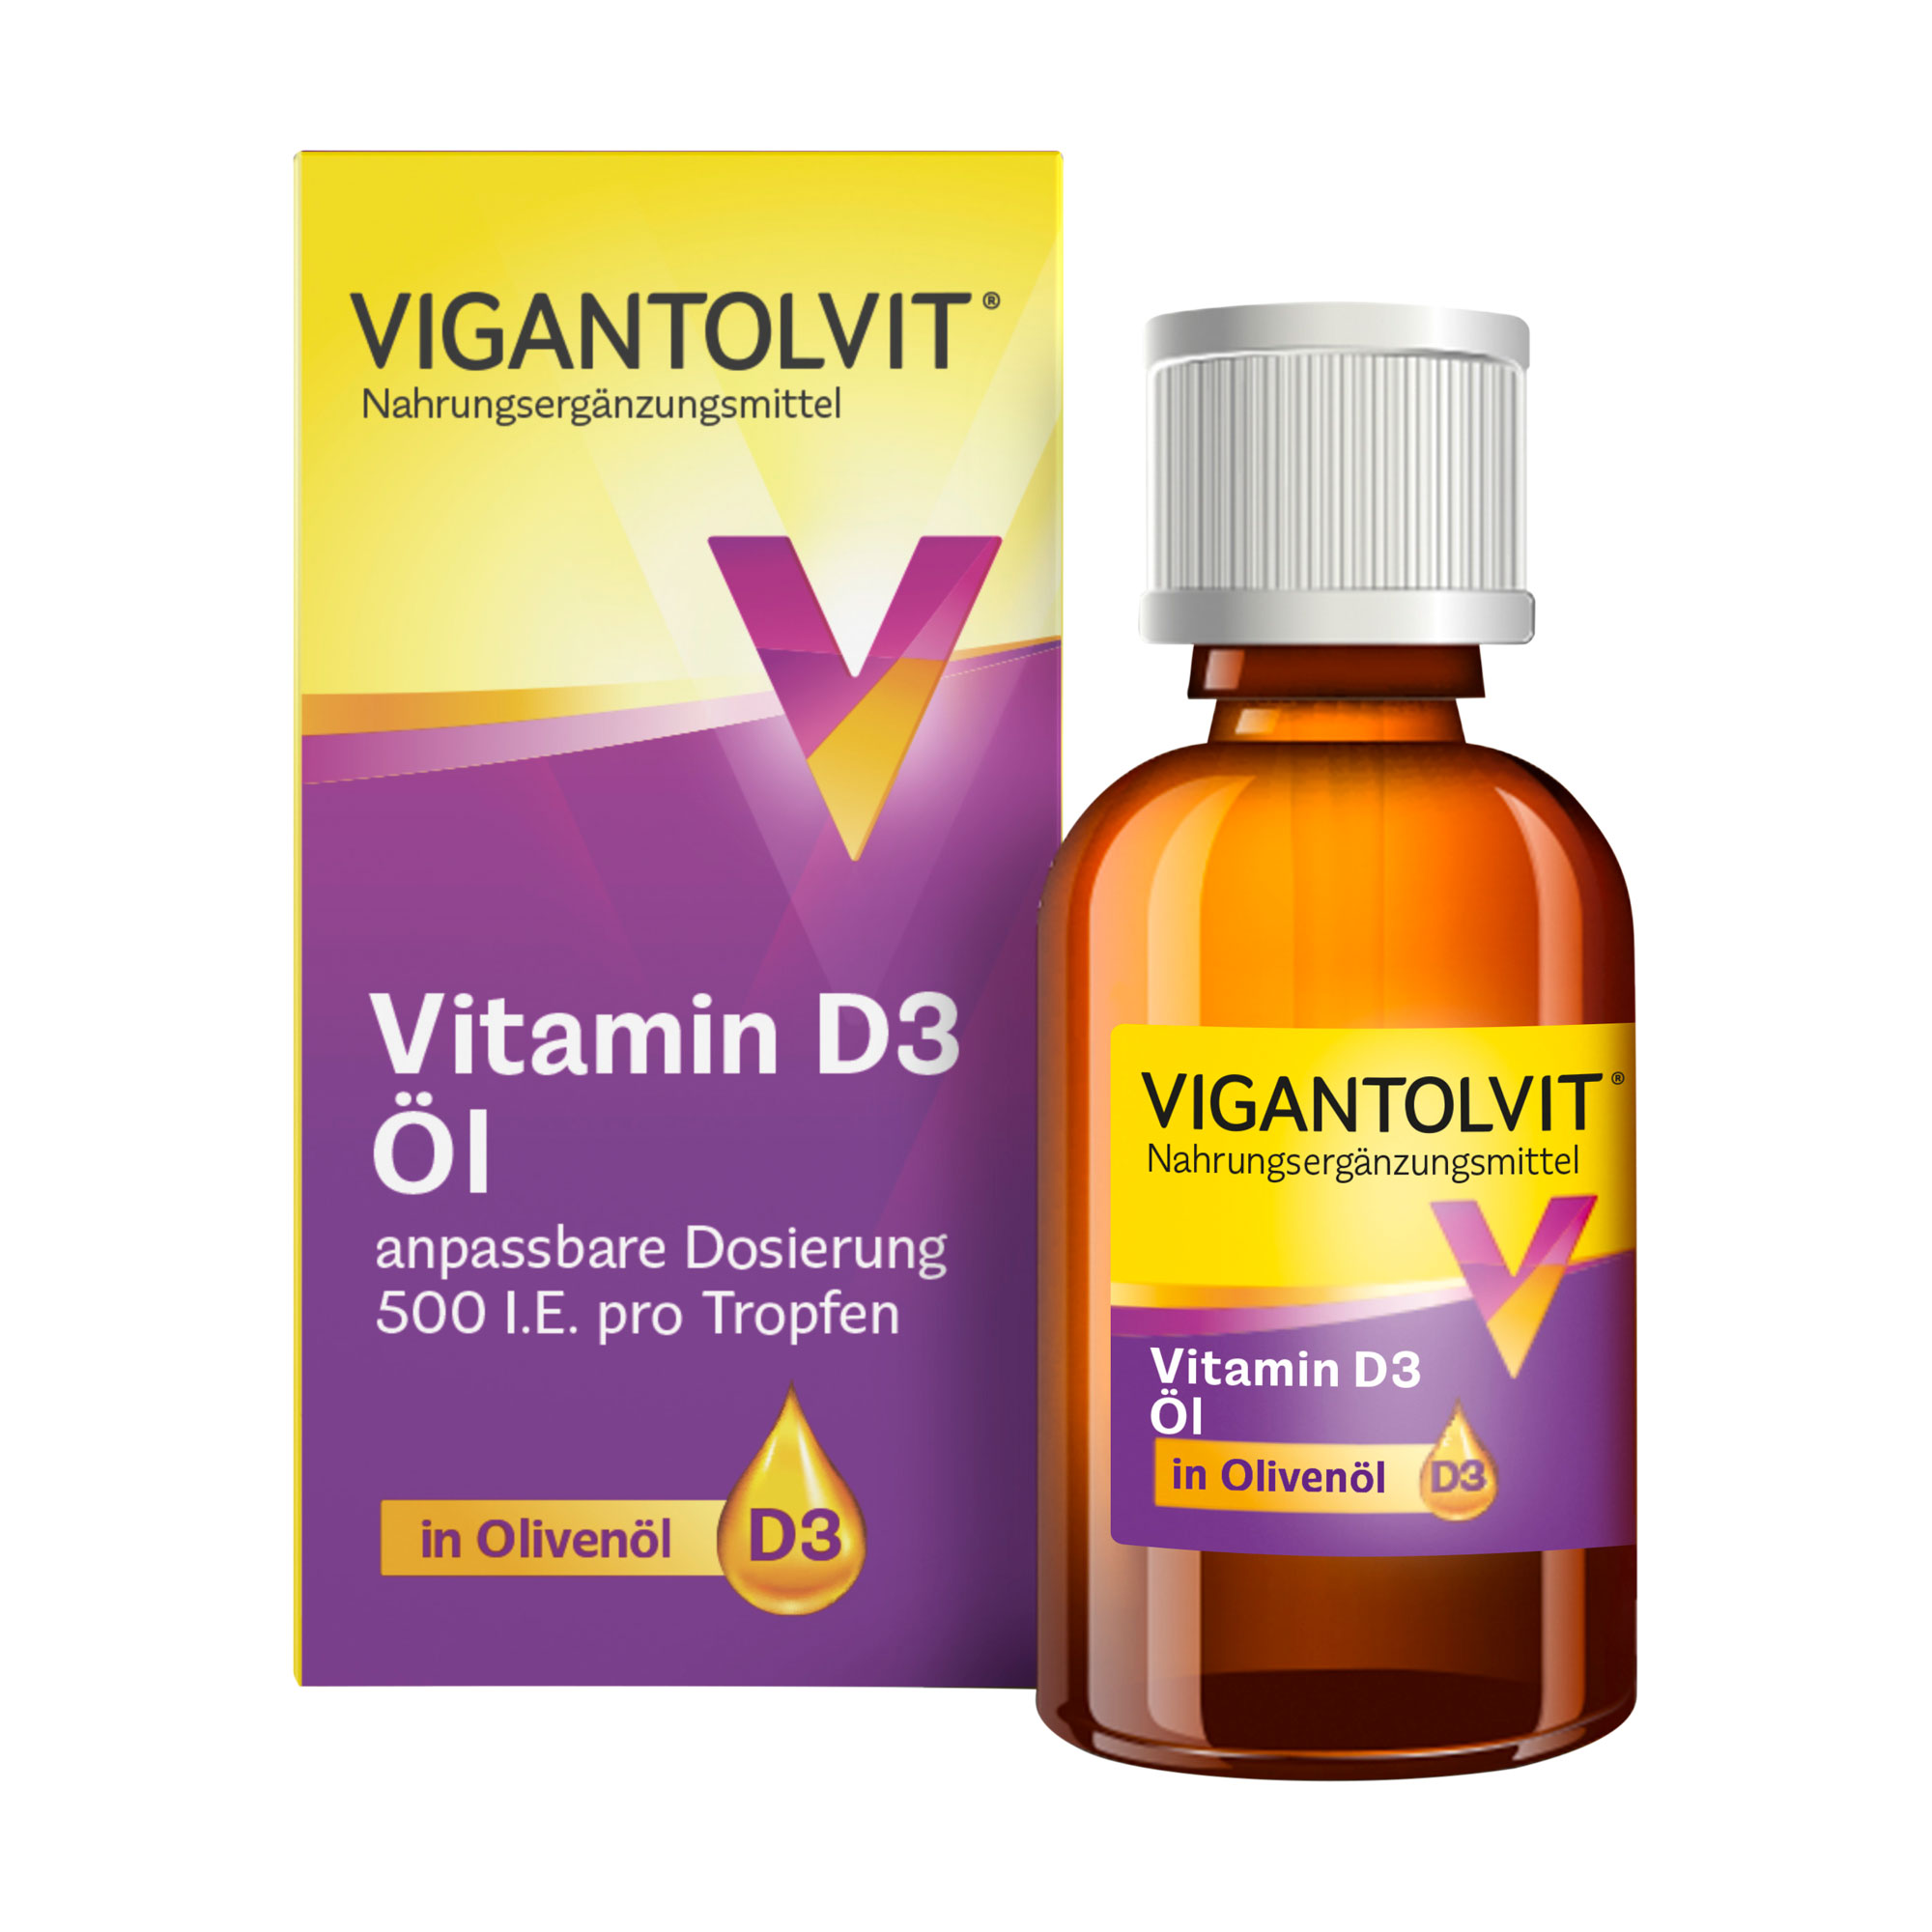 Hochdosiertes Vitamin D3 in Olivenöl zur angepassten Nahrungsergänzung ab 4 Jahren. Leicht einzunehmende Tropfen für die Stärkung des Immunsystems, der Muskelfunktion und der Knochengesundheit.